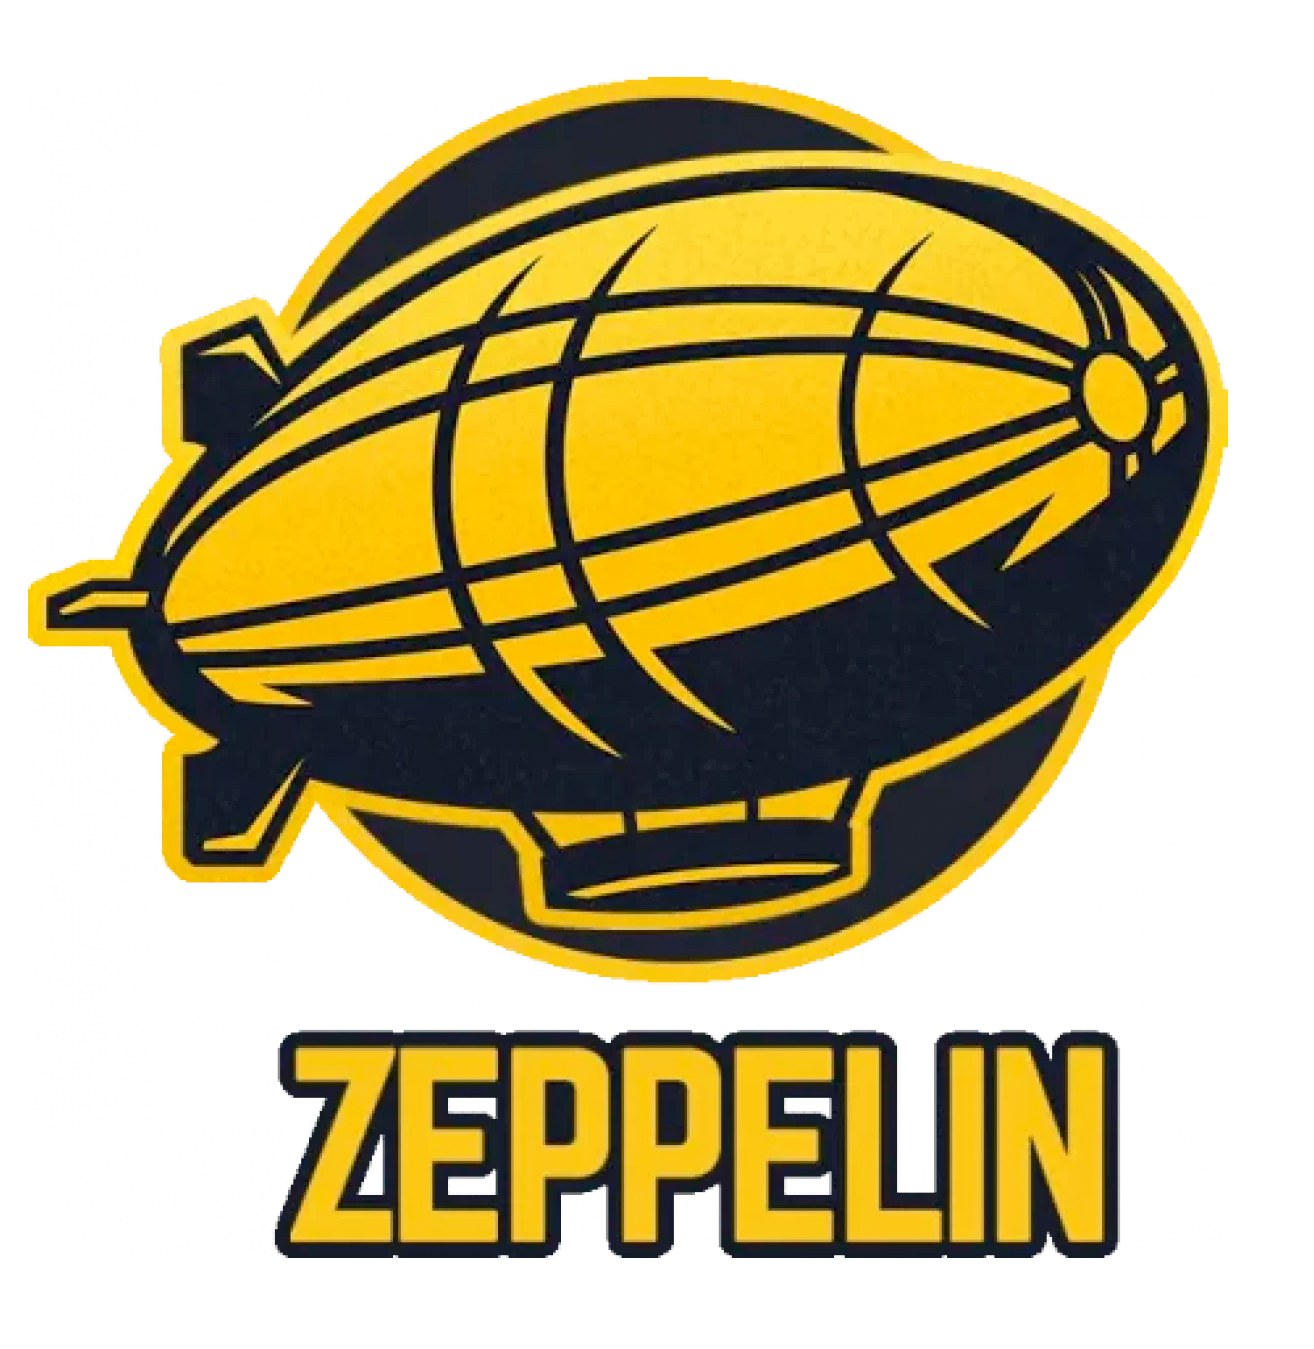 Zeppelin Crash Game in Kenyan Online Casinos